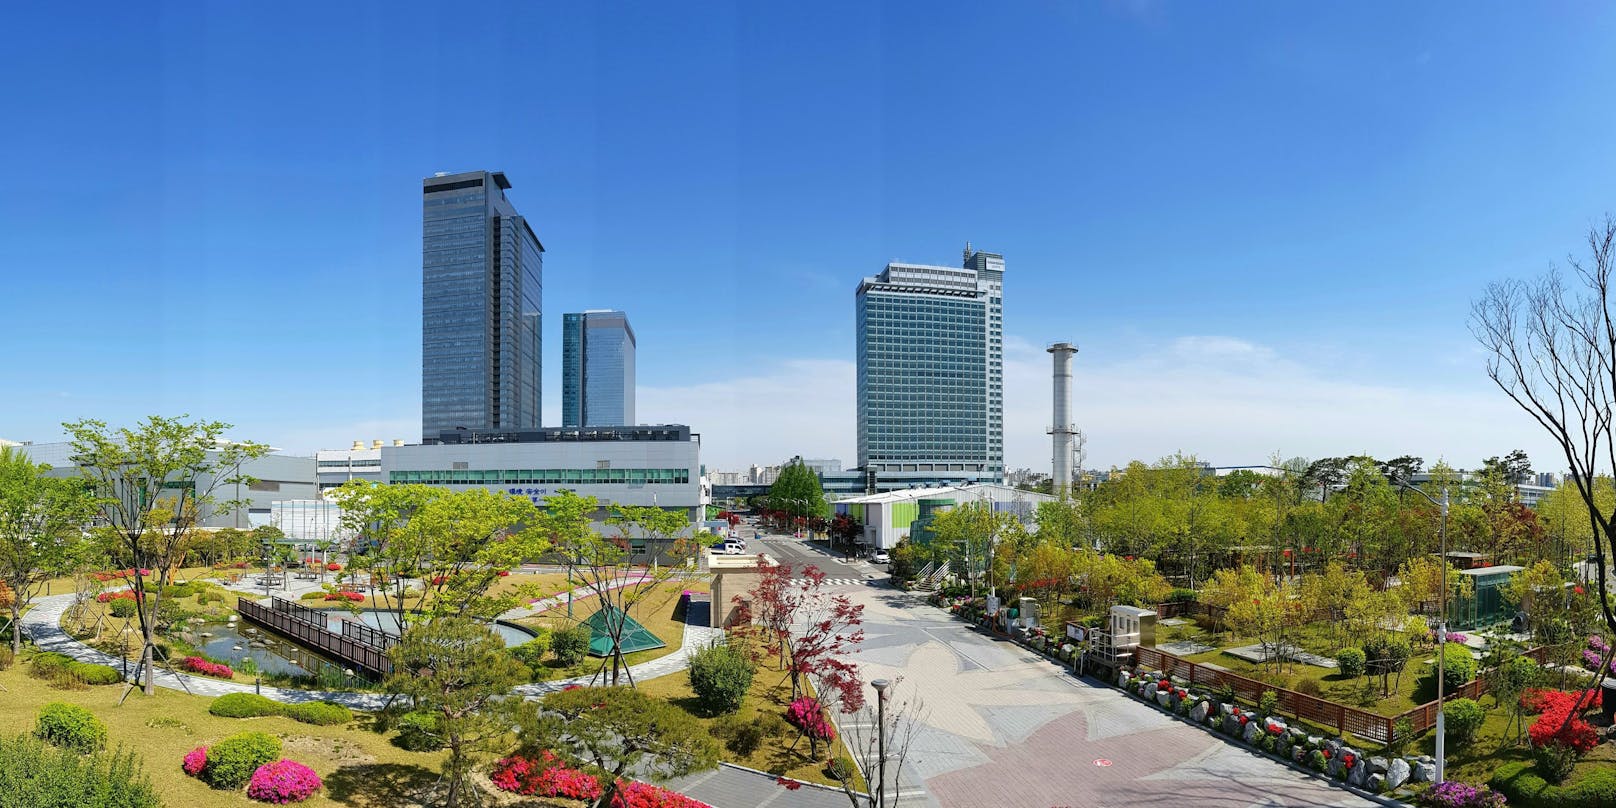 Hier arbeiten 37.000 Menschen: Die Samsung Digital City hat zwar Hochhäuser, aber auch überraschend viel Grün zu bieten.